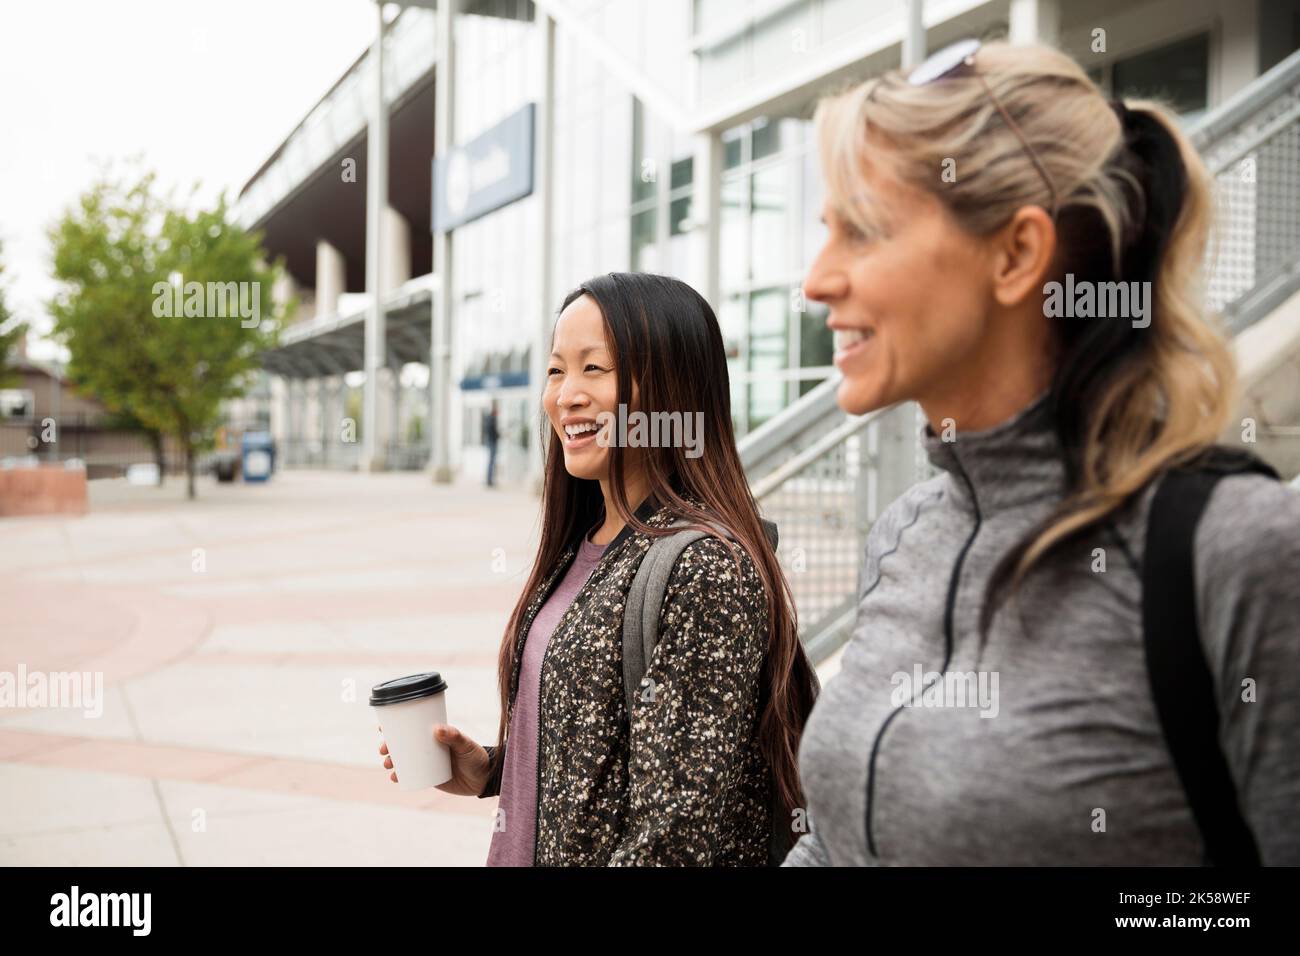 Zwei Frauen unterwegs, lächelnd und vor dem Gebäude sprechend Stockfoto